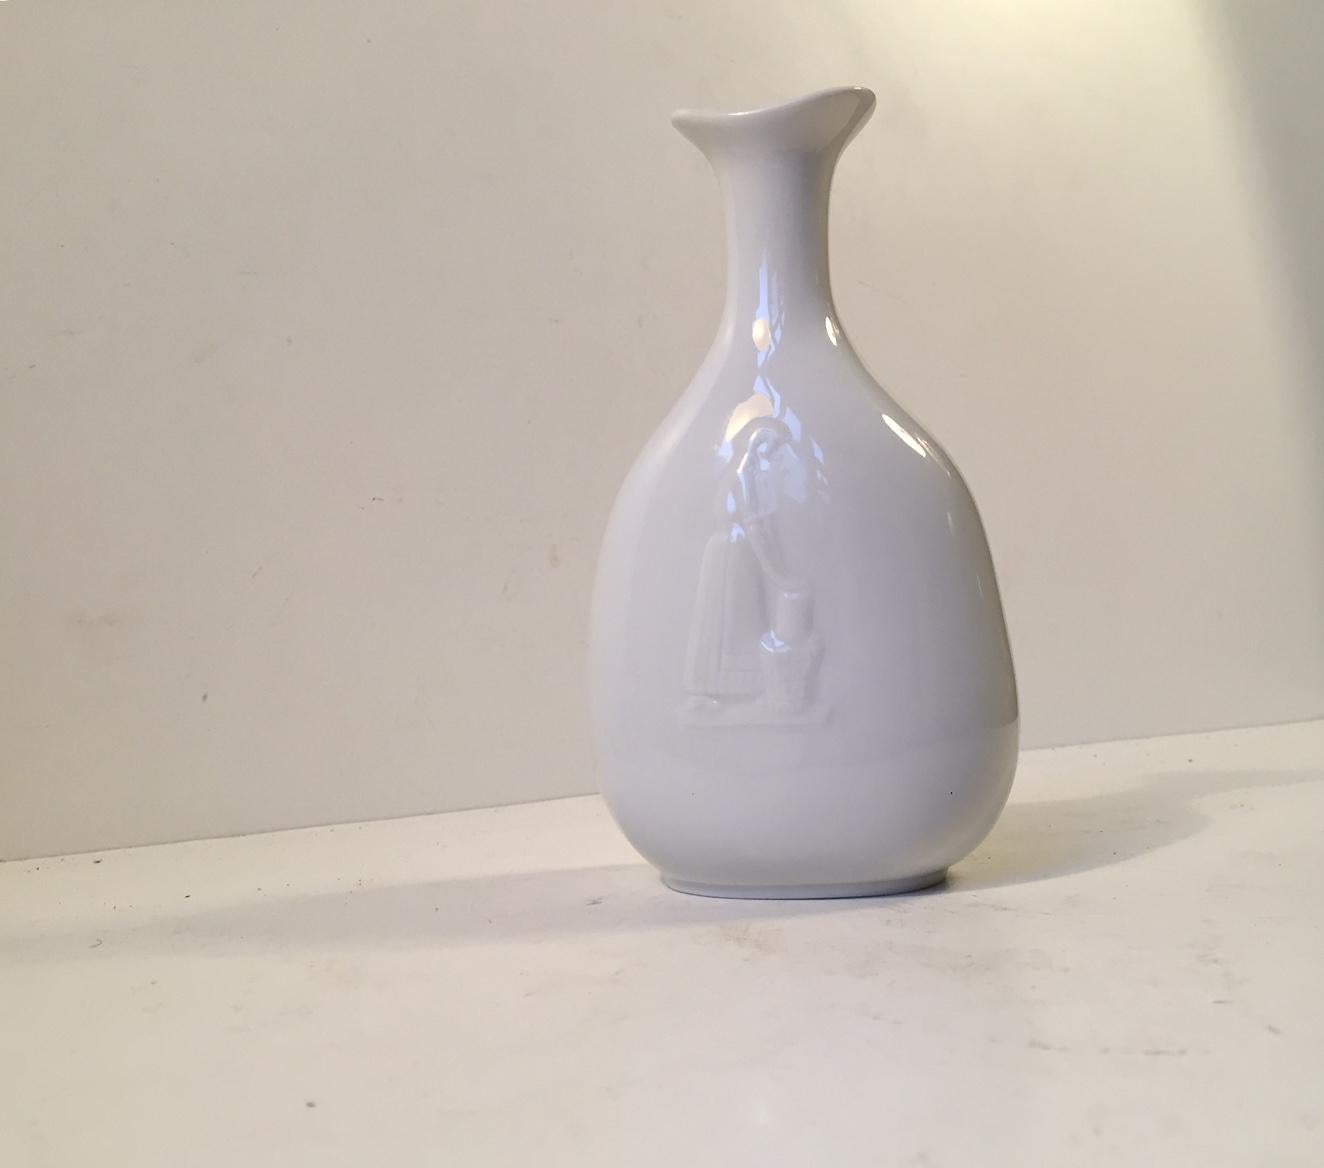 Un vase Blanc de Chine conçu par le céramiste suédois Gunnar Nylund pour Hellerupis (Hellerup Ice Cream) au Danemark. L'avant représente une femme faisant de la crème glacée. Ce vase a été fabriqué comme cadeau commercial en quantité relativement